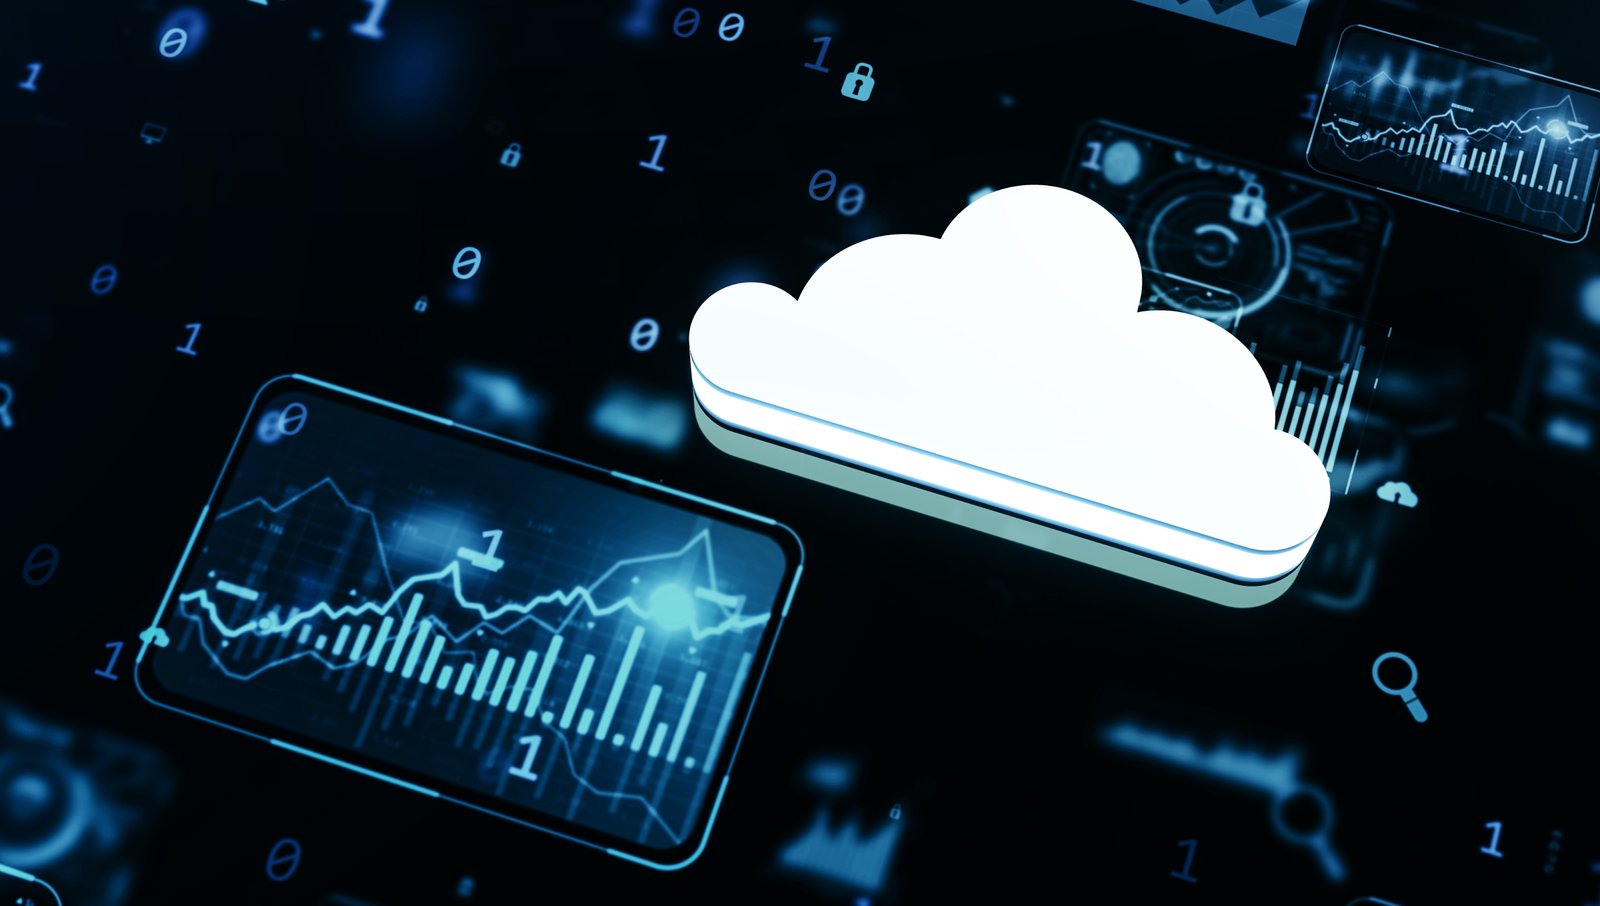 Cloud Data Analytics